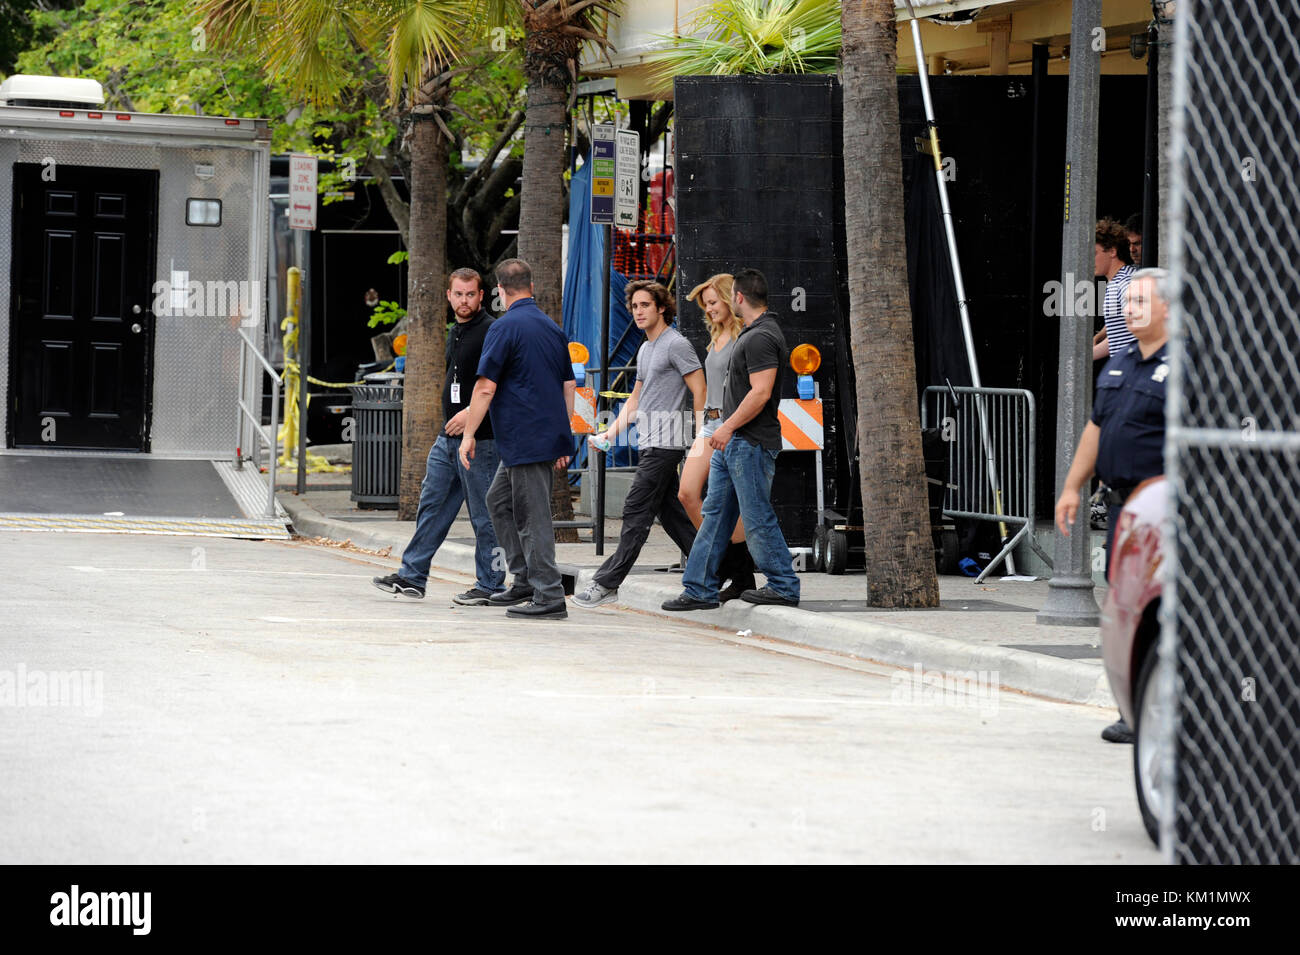 Fort Lauderdale, FL - Juni 18: (exklusive Deckung) Tom Cruise sich weigert, auf dem Set von Rock of Ages fotografiert werden. Kreuzfahrt war um in einem roten Golf Cart (das war alles abgedeckt) und durch die Sicherheit von seinem Anhänger flankiert in der Tür der Club (der war wie 30 Meter entfernt); Fans sagten Tom, sah, auf der anderen Straßenseite lächerlich macht, anstatt zu Fuß. Alle waren sehr enttäuscht, als die einer Liste Schauspieler weigerte sich, Fotos oder Autogramme zu nehmen, nachdem er von Fans und photogs, schrieen' ich gehört, dieser Film ist Strait zu Video' und 'Tom Ich hoffe Sie d Gehechelt war angetrieben Stockfoto